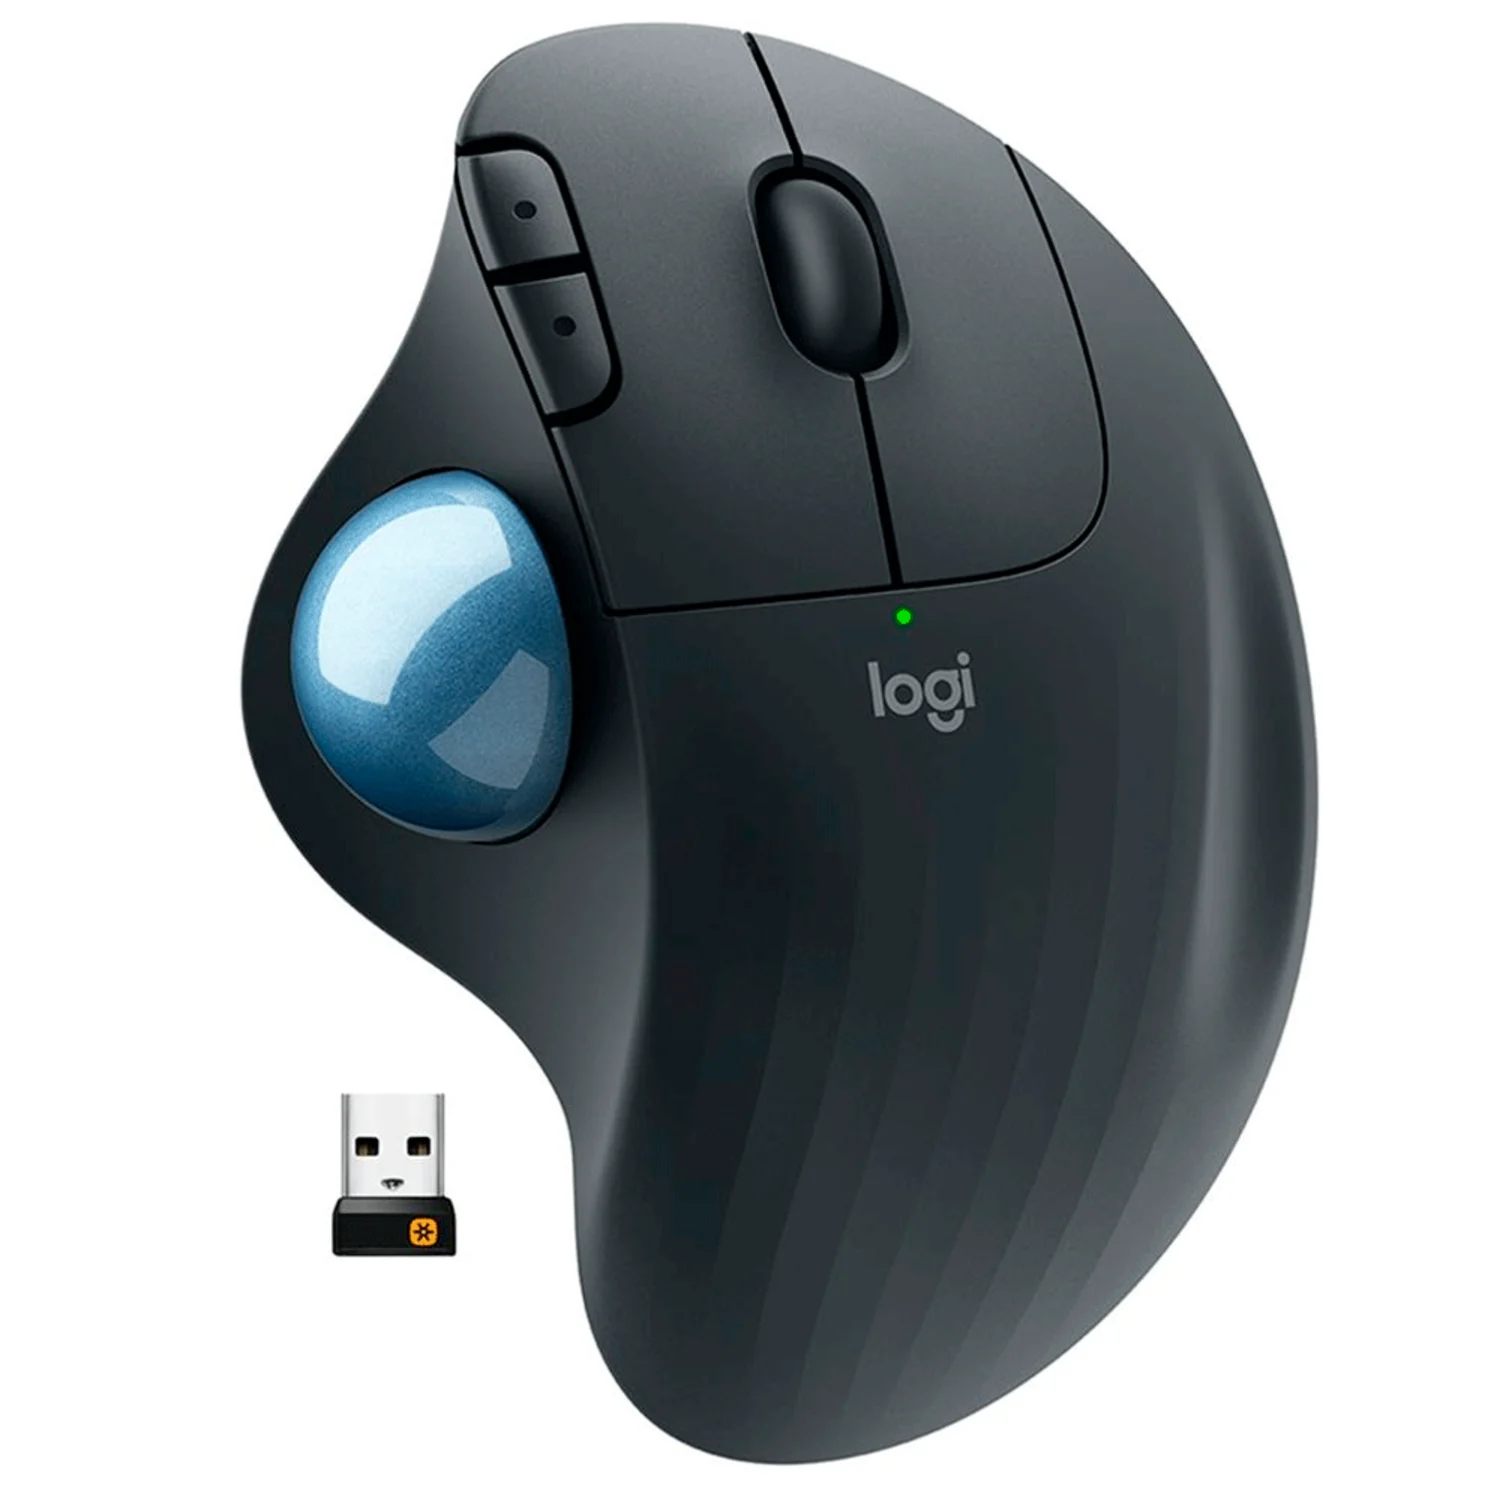 Mouse Logitech Ergo M575 - Preto (910-005869)